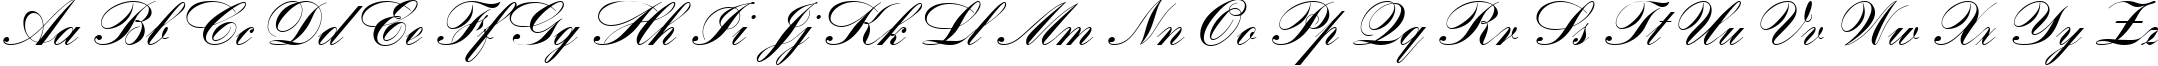 Пример написания английского алфавита шрифтом Romantica script